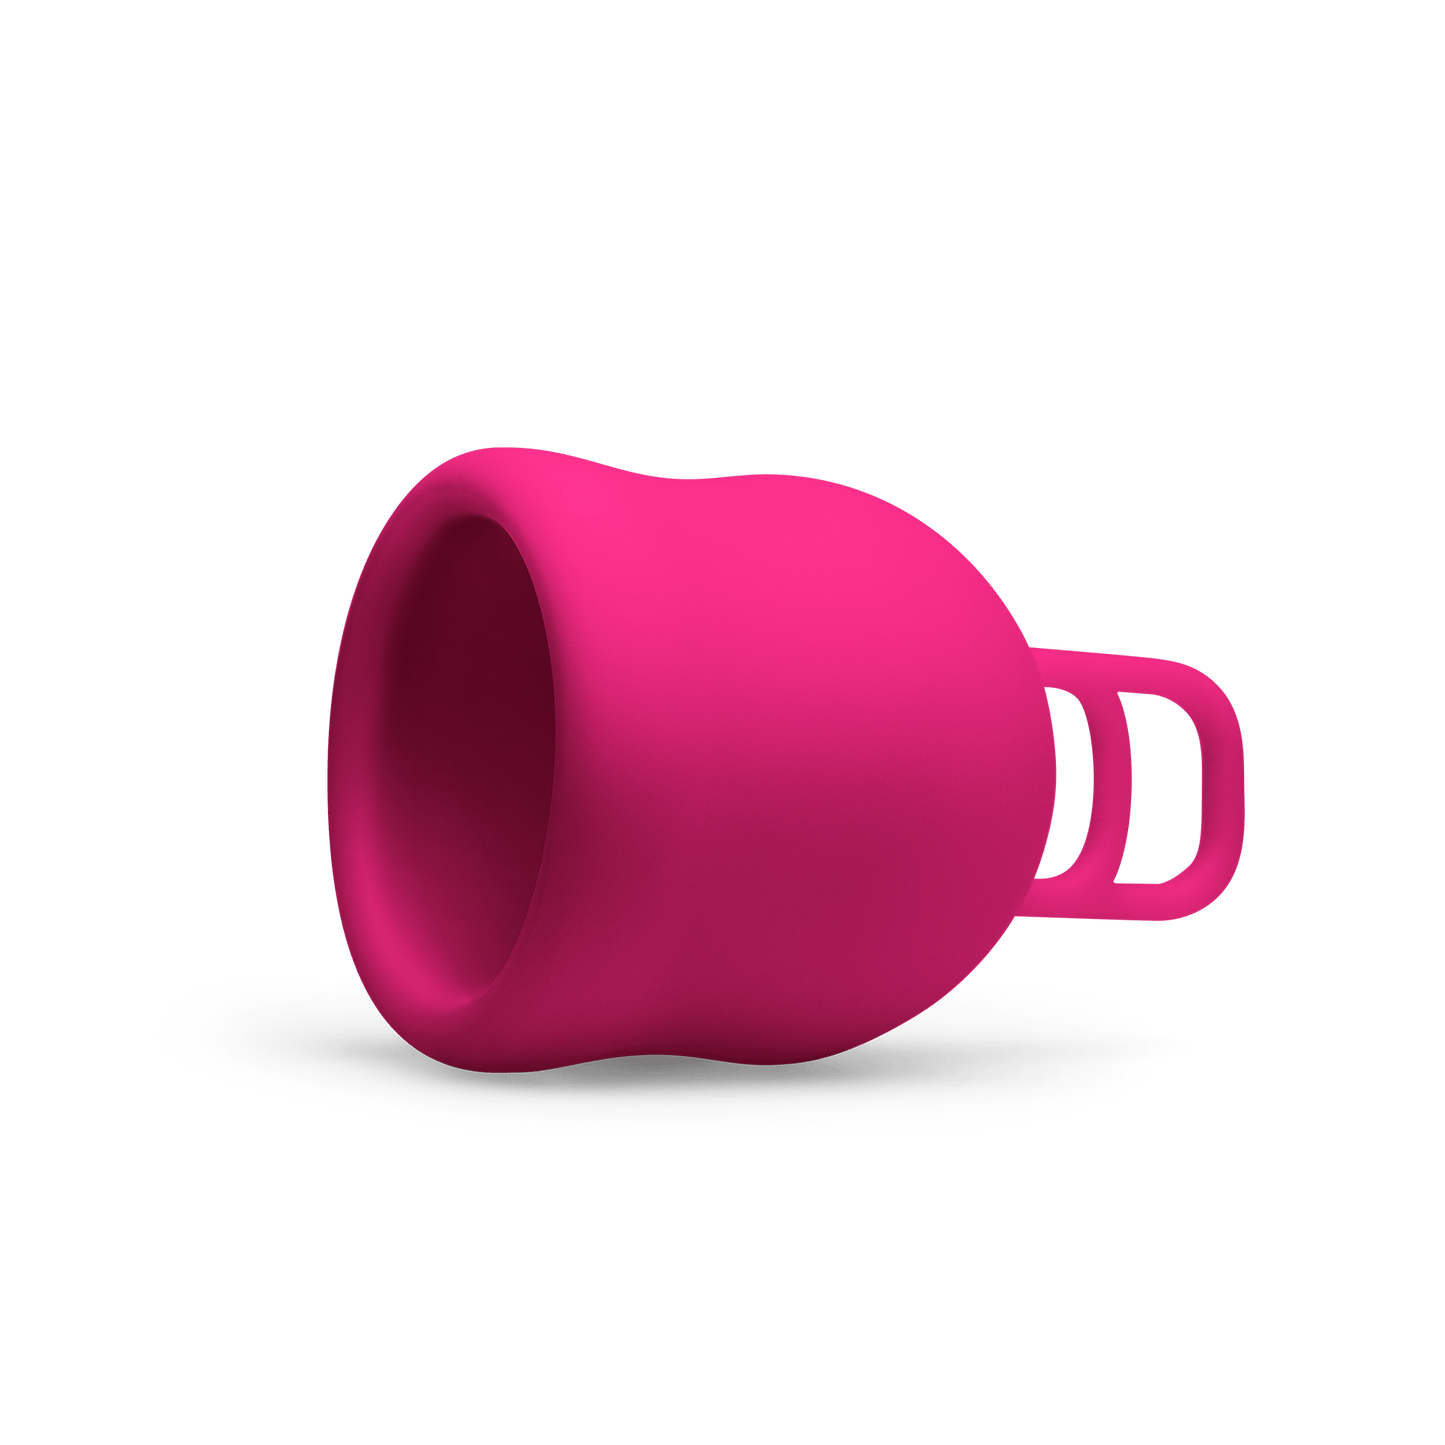 Merula Menstrual Cup XL